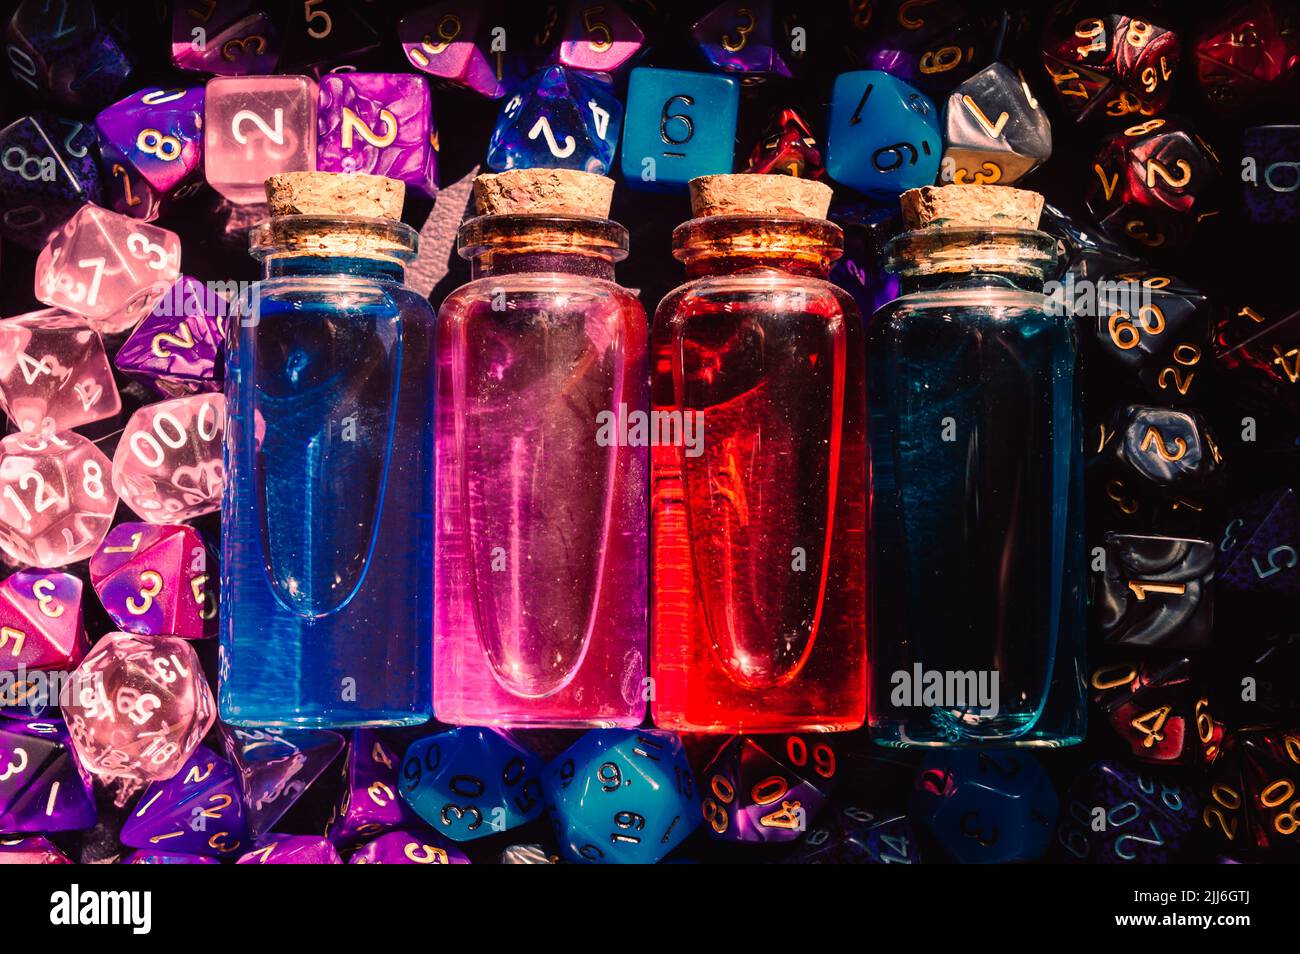 Immagine ravvicinata di bottiglie in vetro con tappi in sughero e dadi rpg Foto Stock